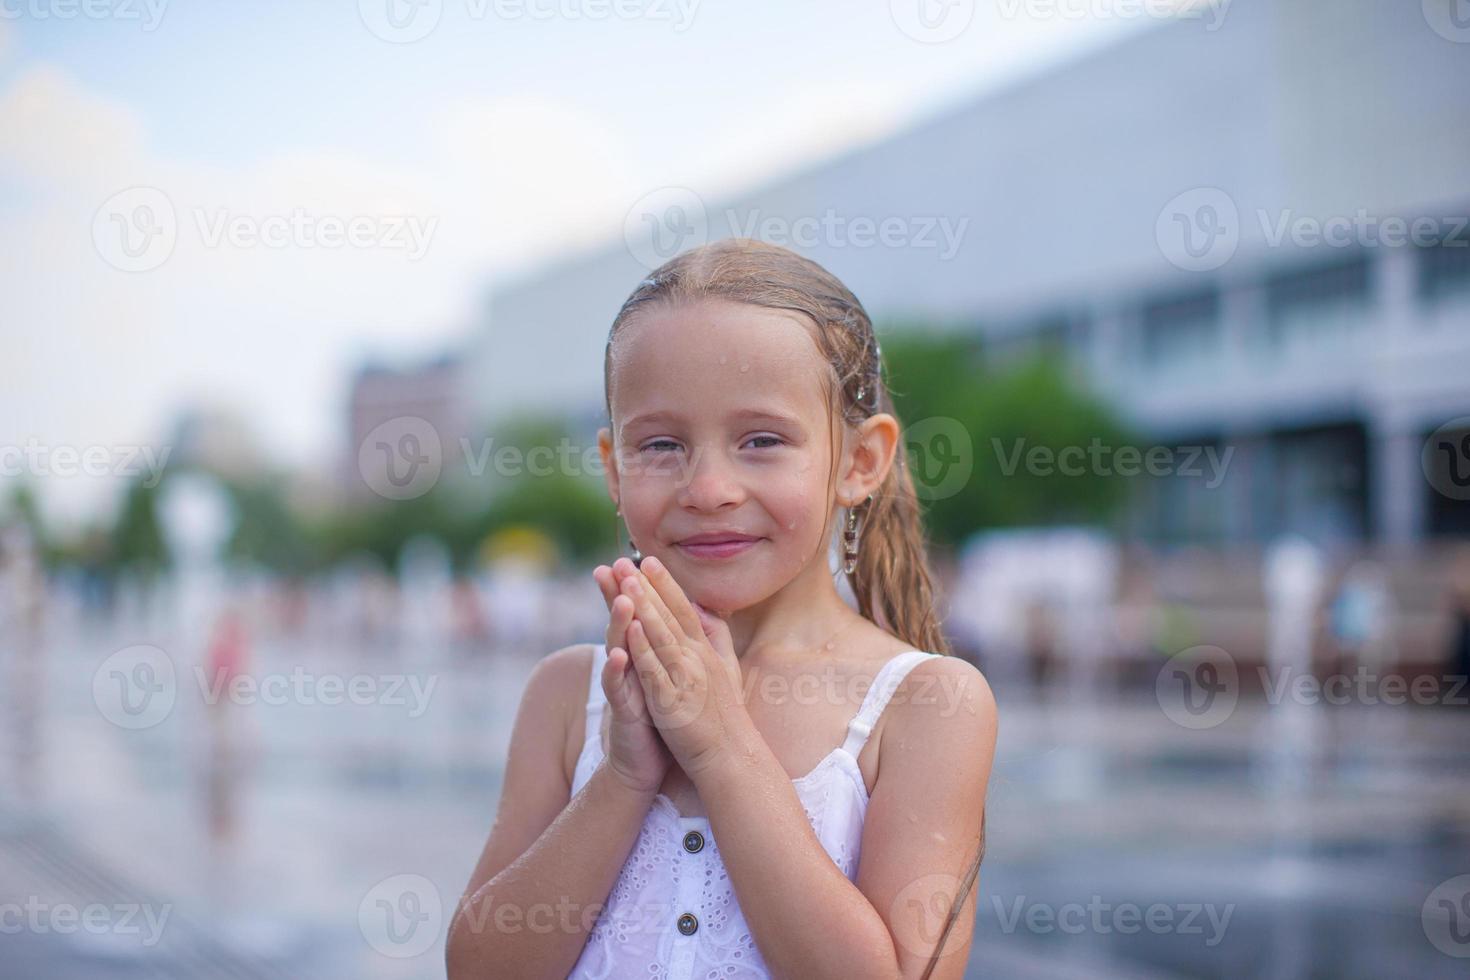 menina se divertir na fonte de rua aberta no dia quente de verão foto